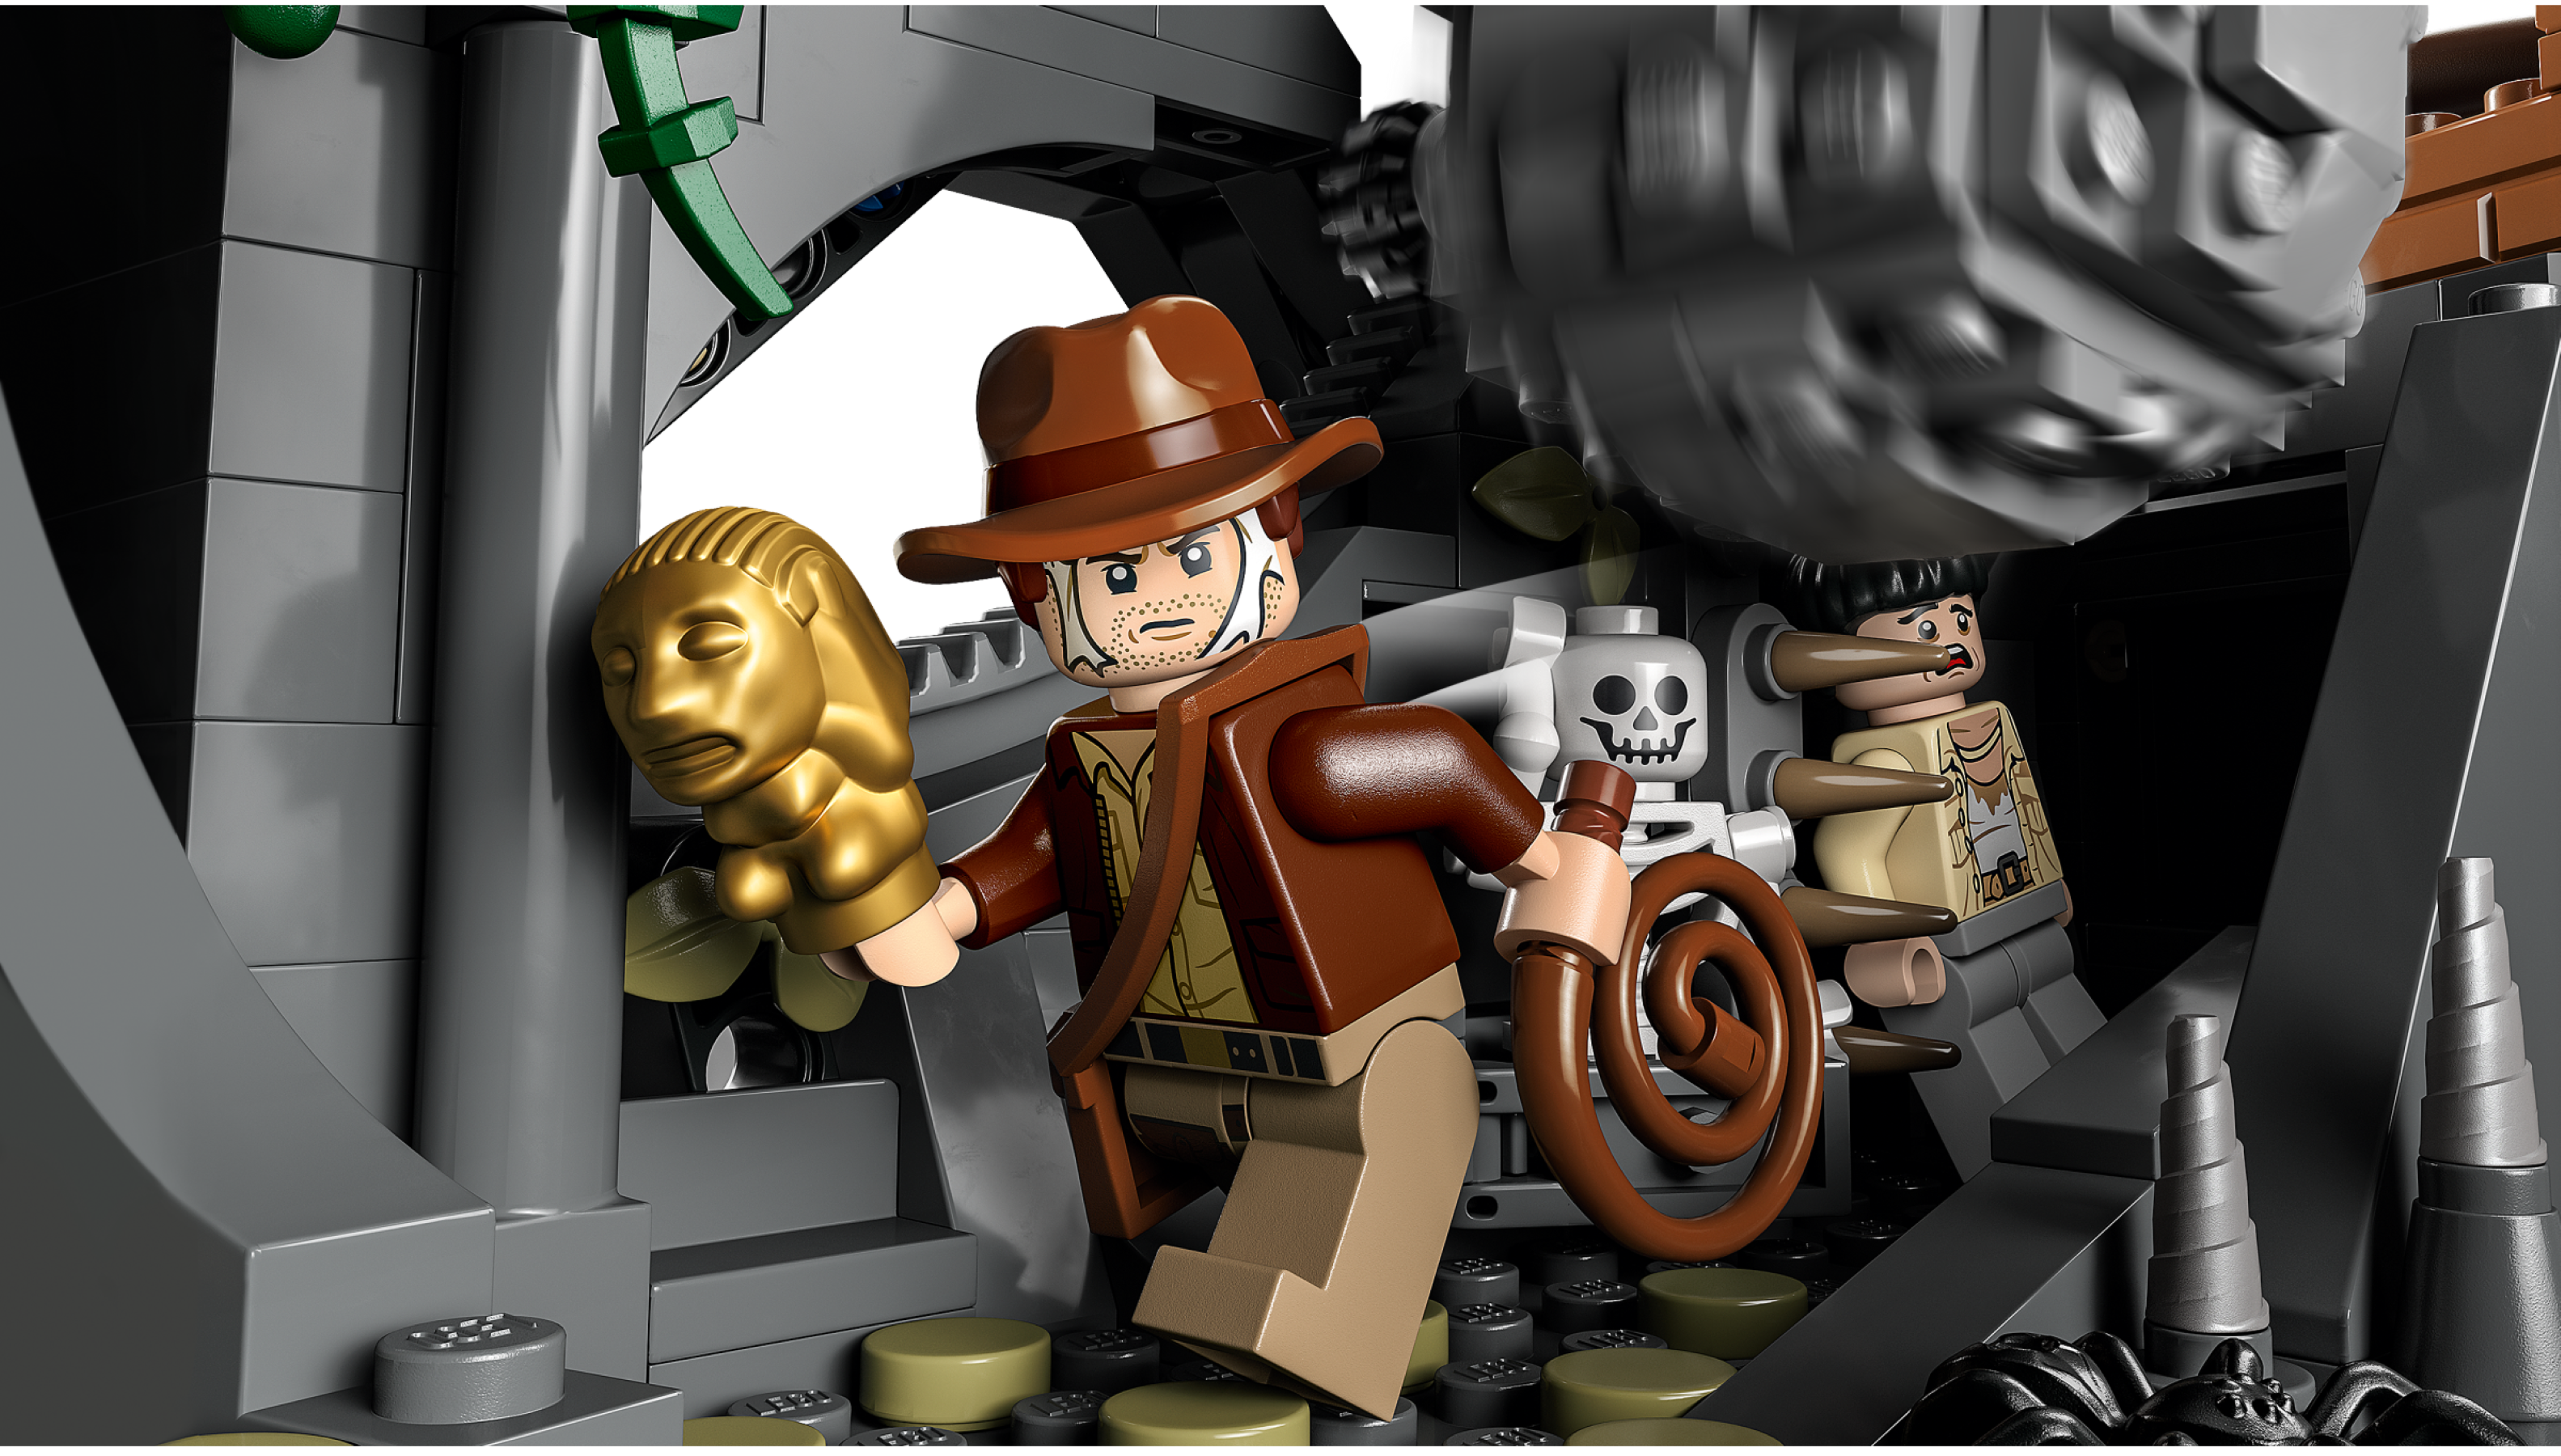 77015 LEGO Indiana Jones - Il Tempio dell'idolo d'oro – sgorbatipiacenza